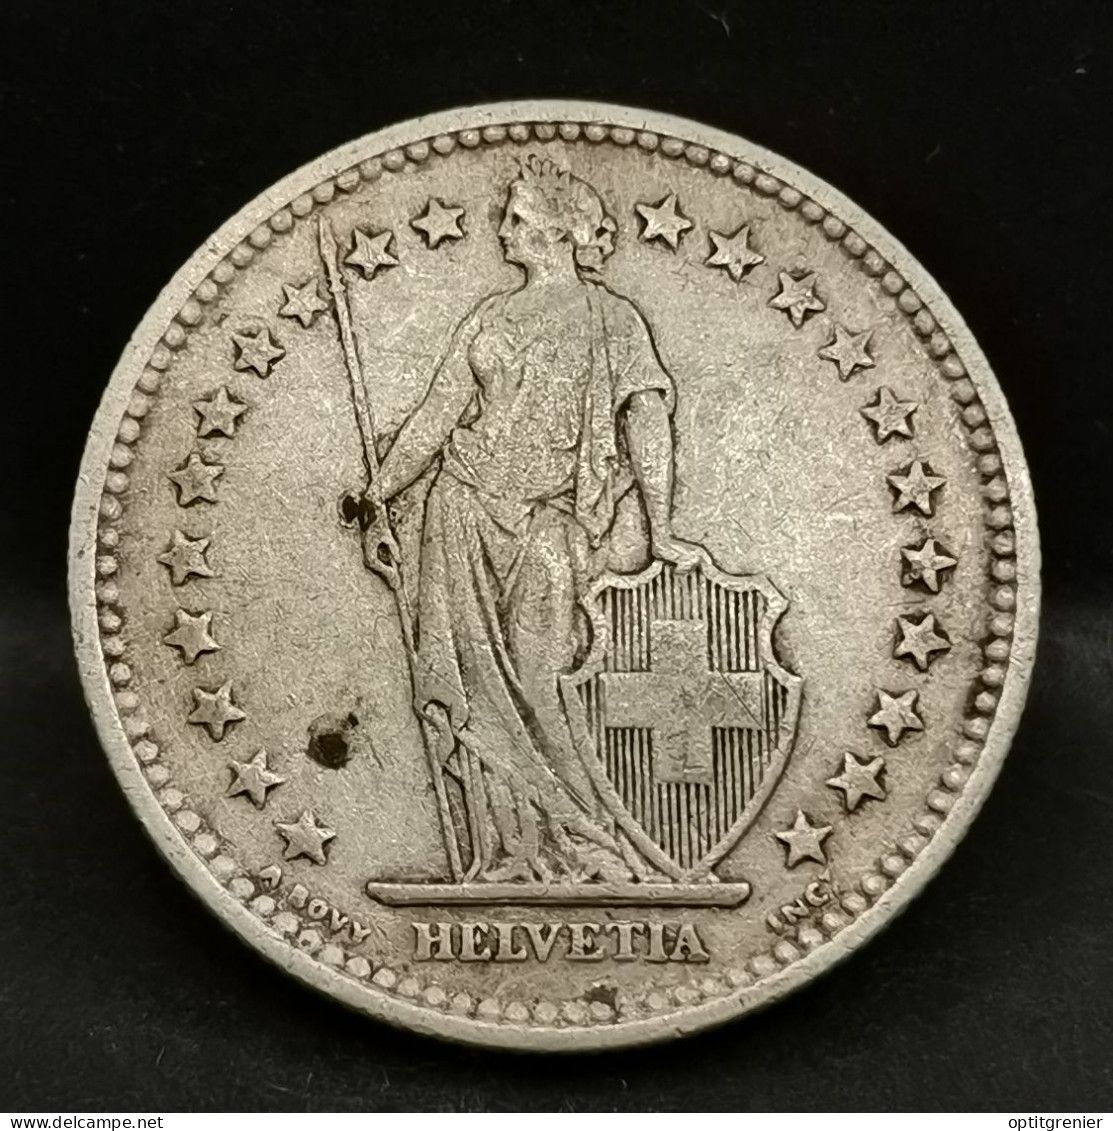 2 FRANCS SUISSE ARGENT 1903 B BERNE HELVETIA DEBOUT 300000 EX. / SWITZERLAND SILVER - 2 Francs